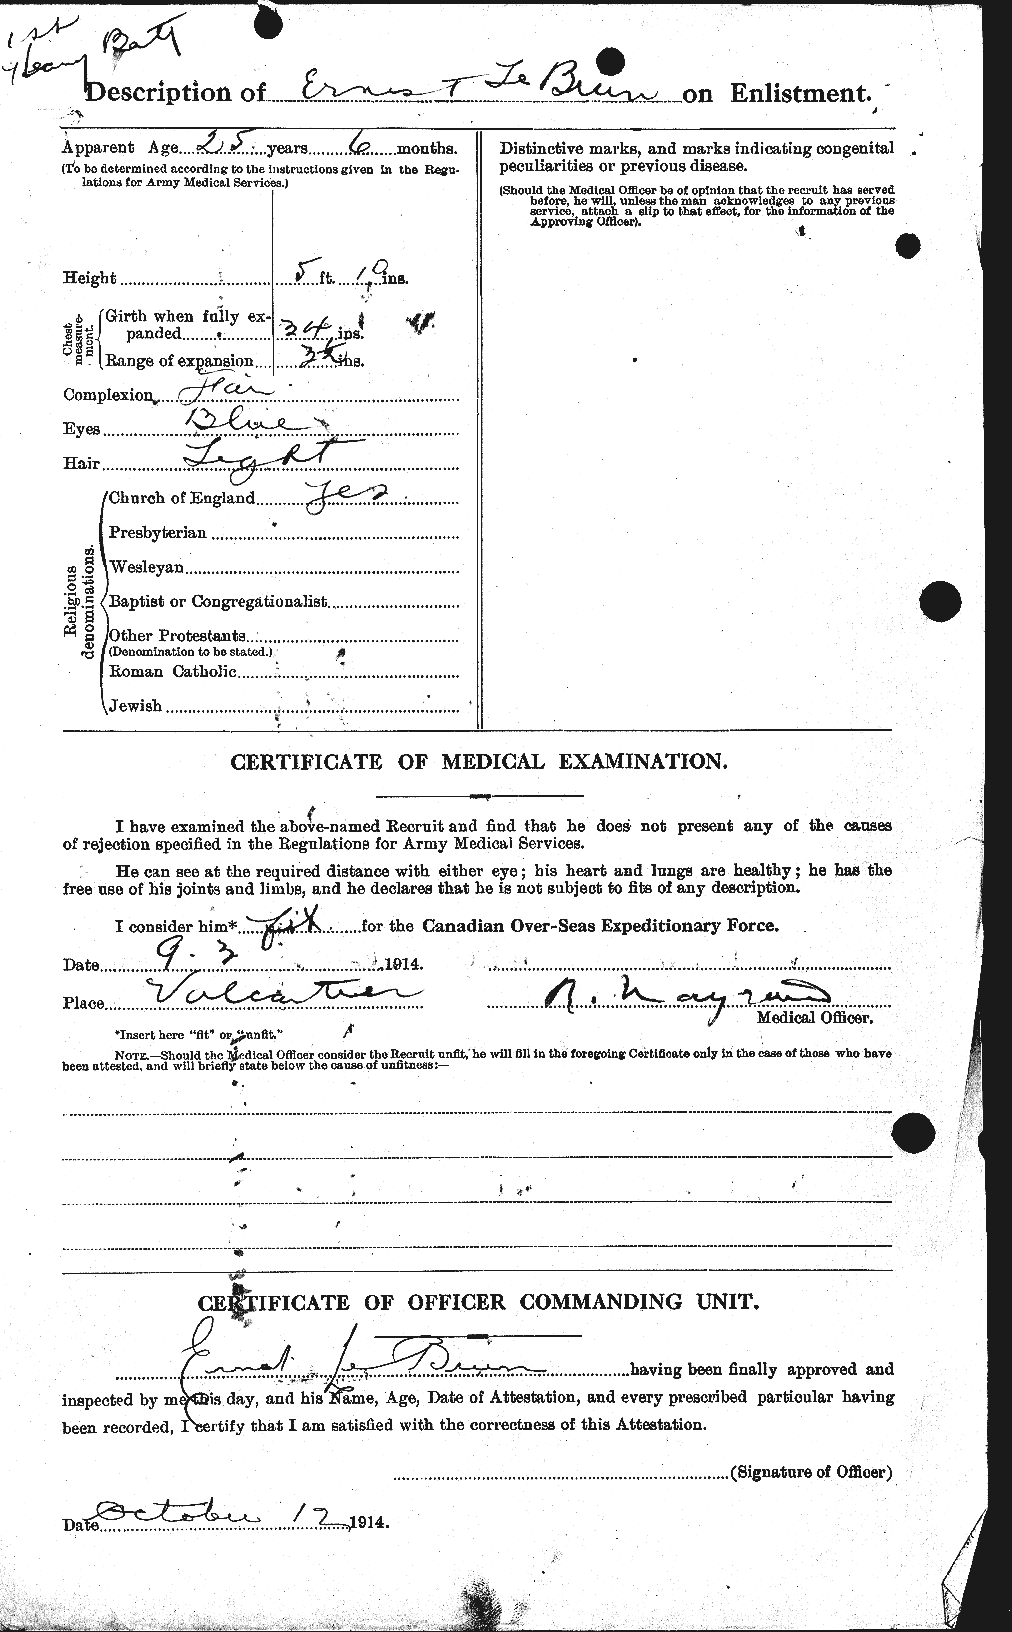 Dossiers du Personnel de la Première Guerre mondiale - CEC 461556b